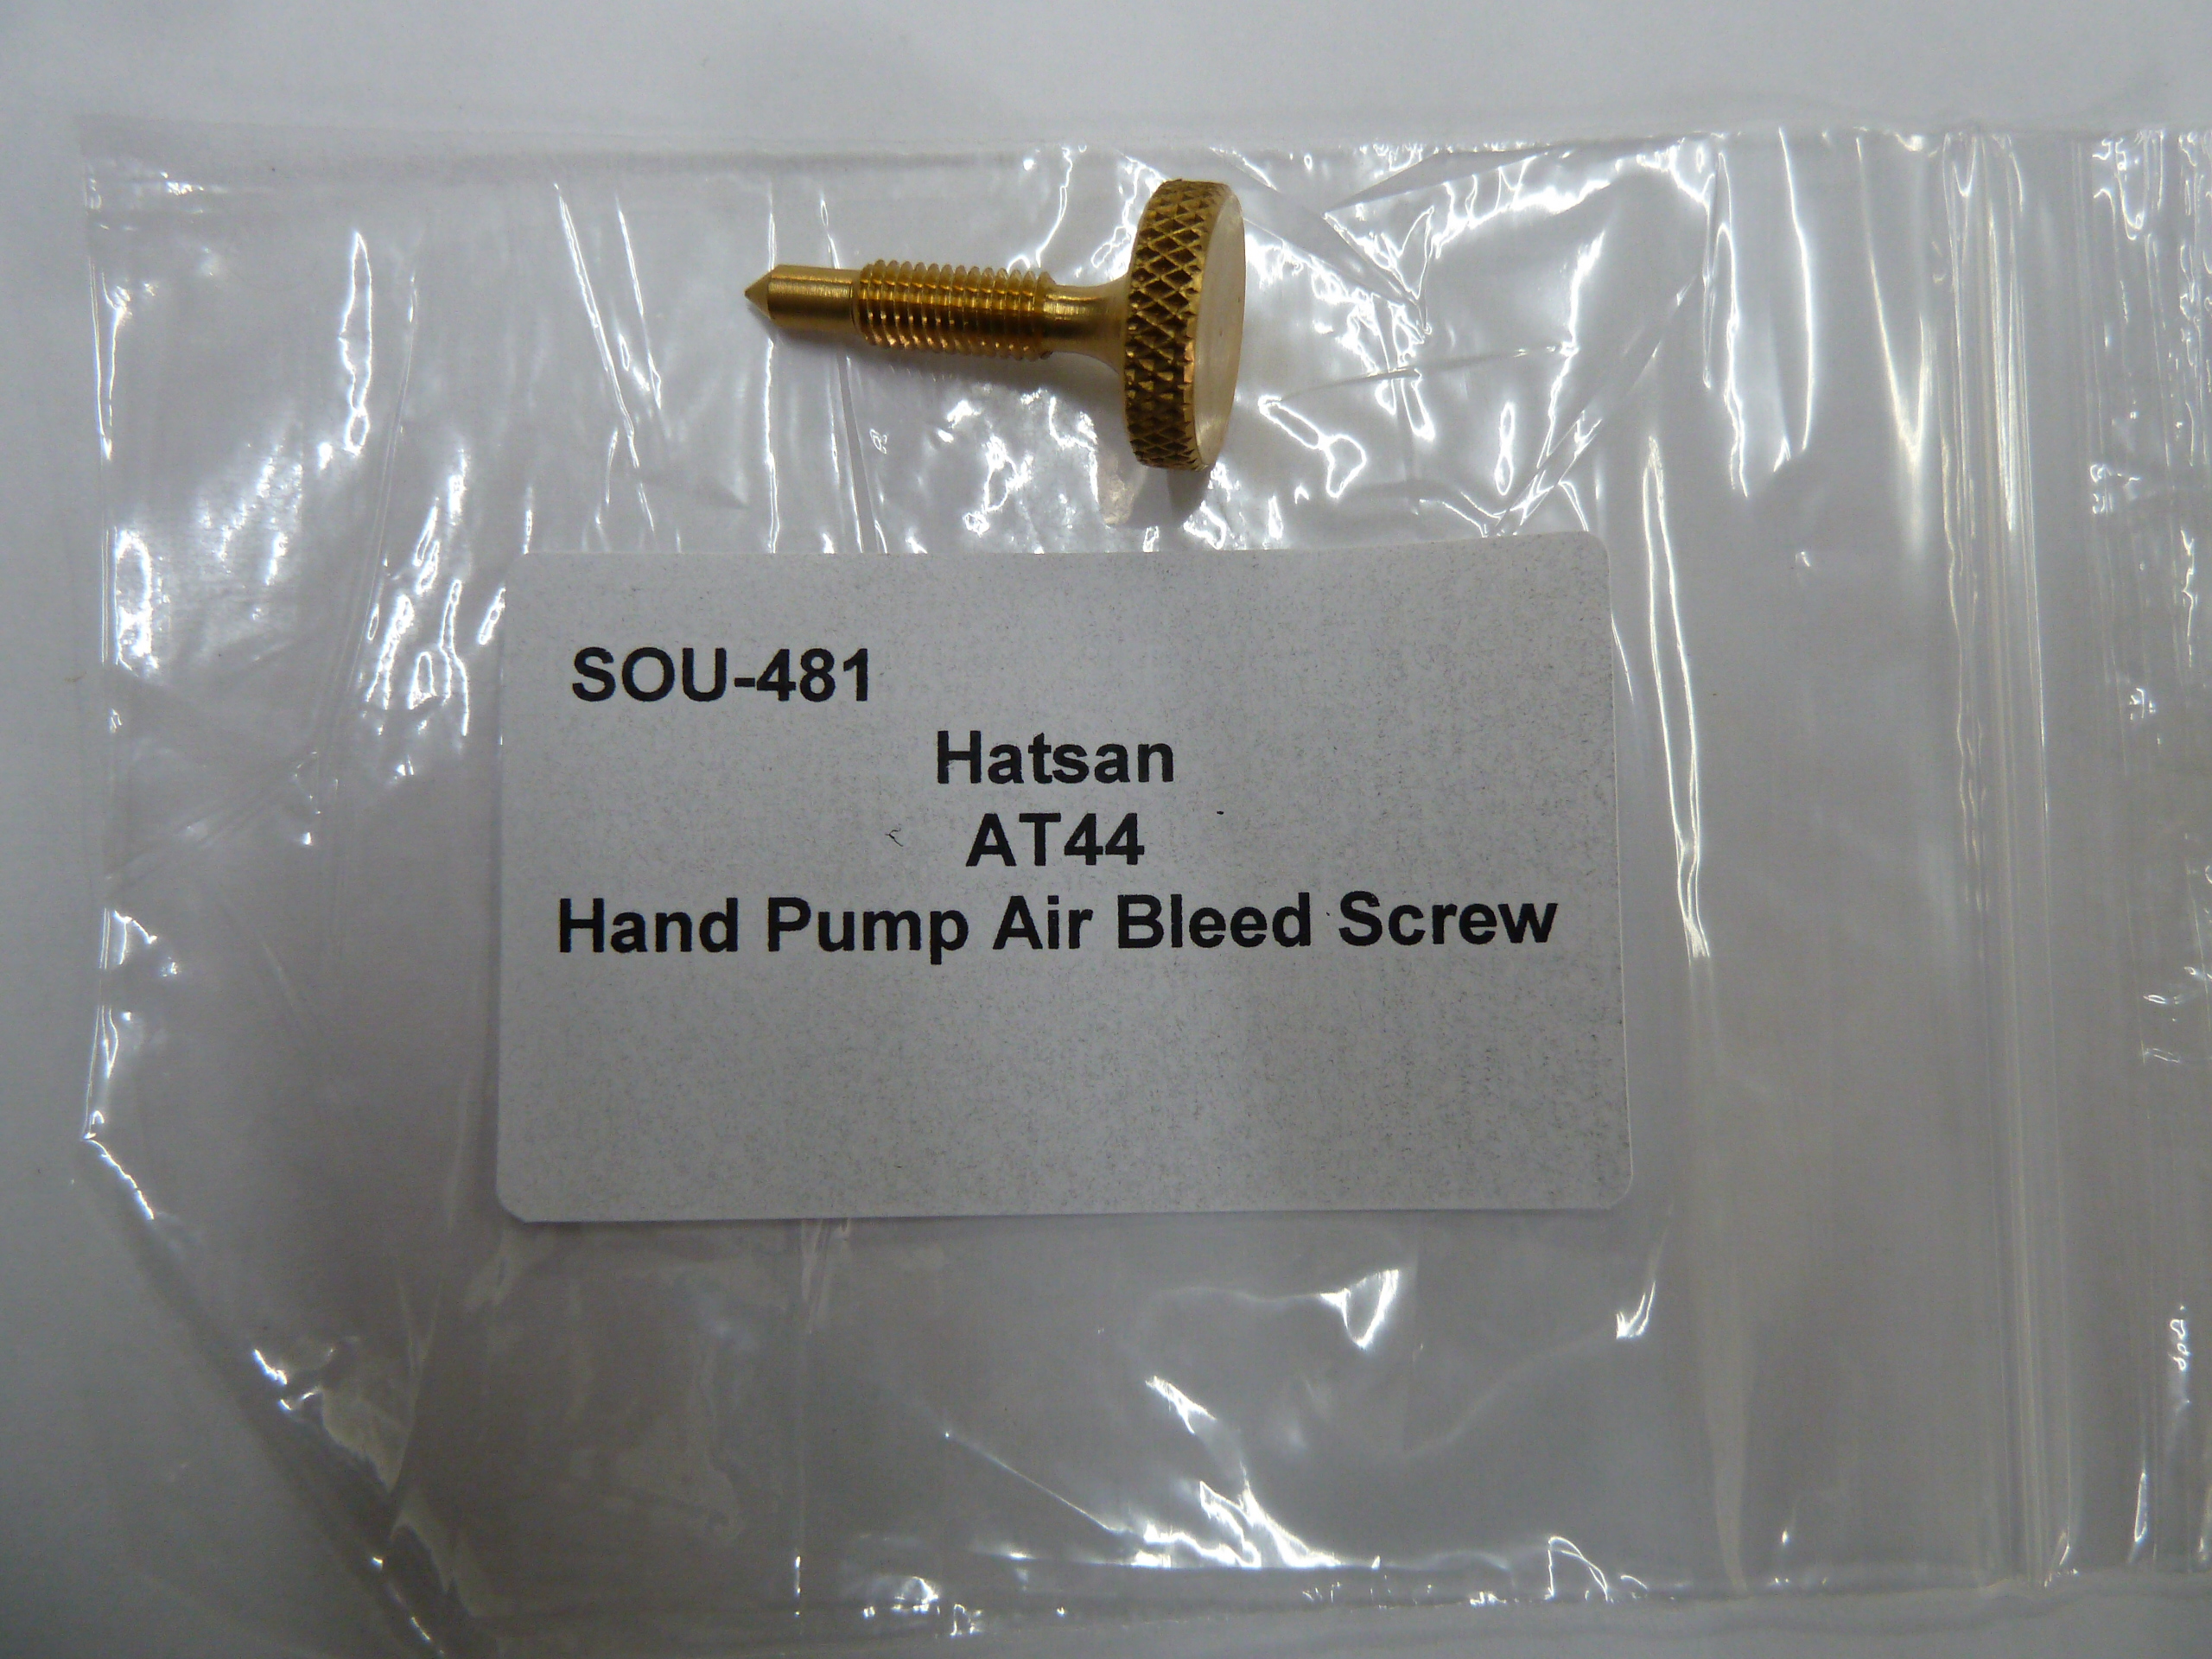 SOU-481 Hatsan AT44 hand pump air bleed screw